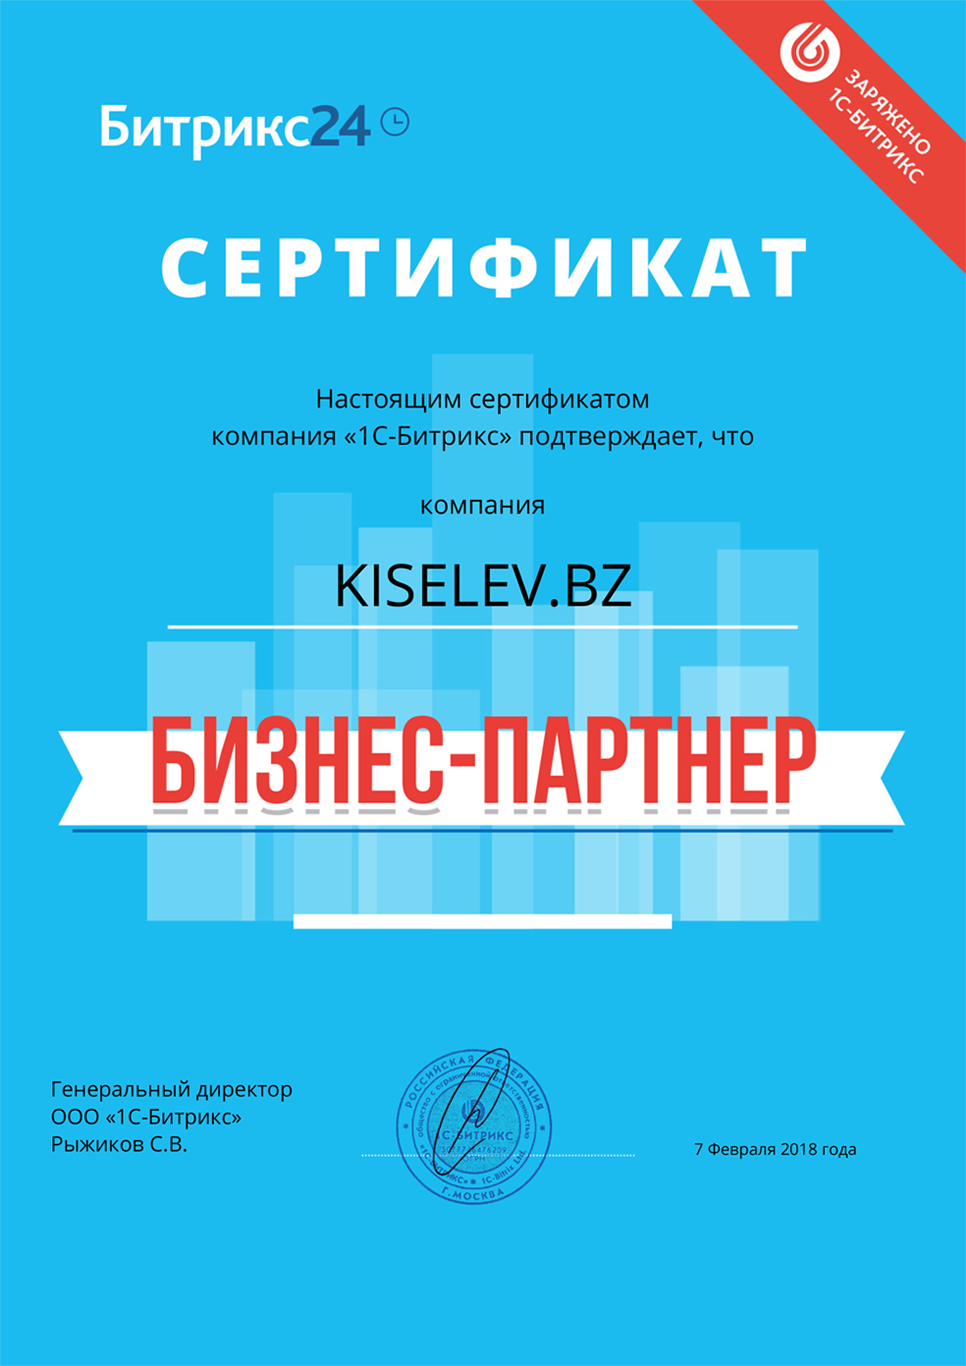 Сертификат партнёра по АМОСРМ в Александрове